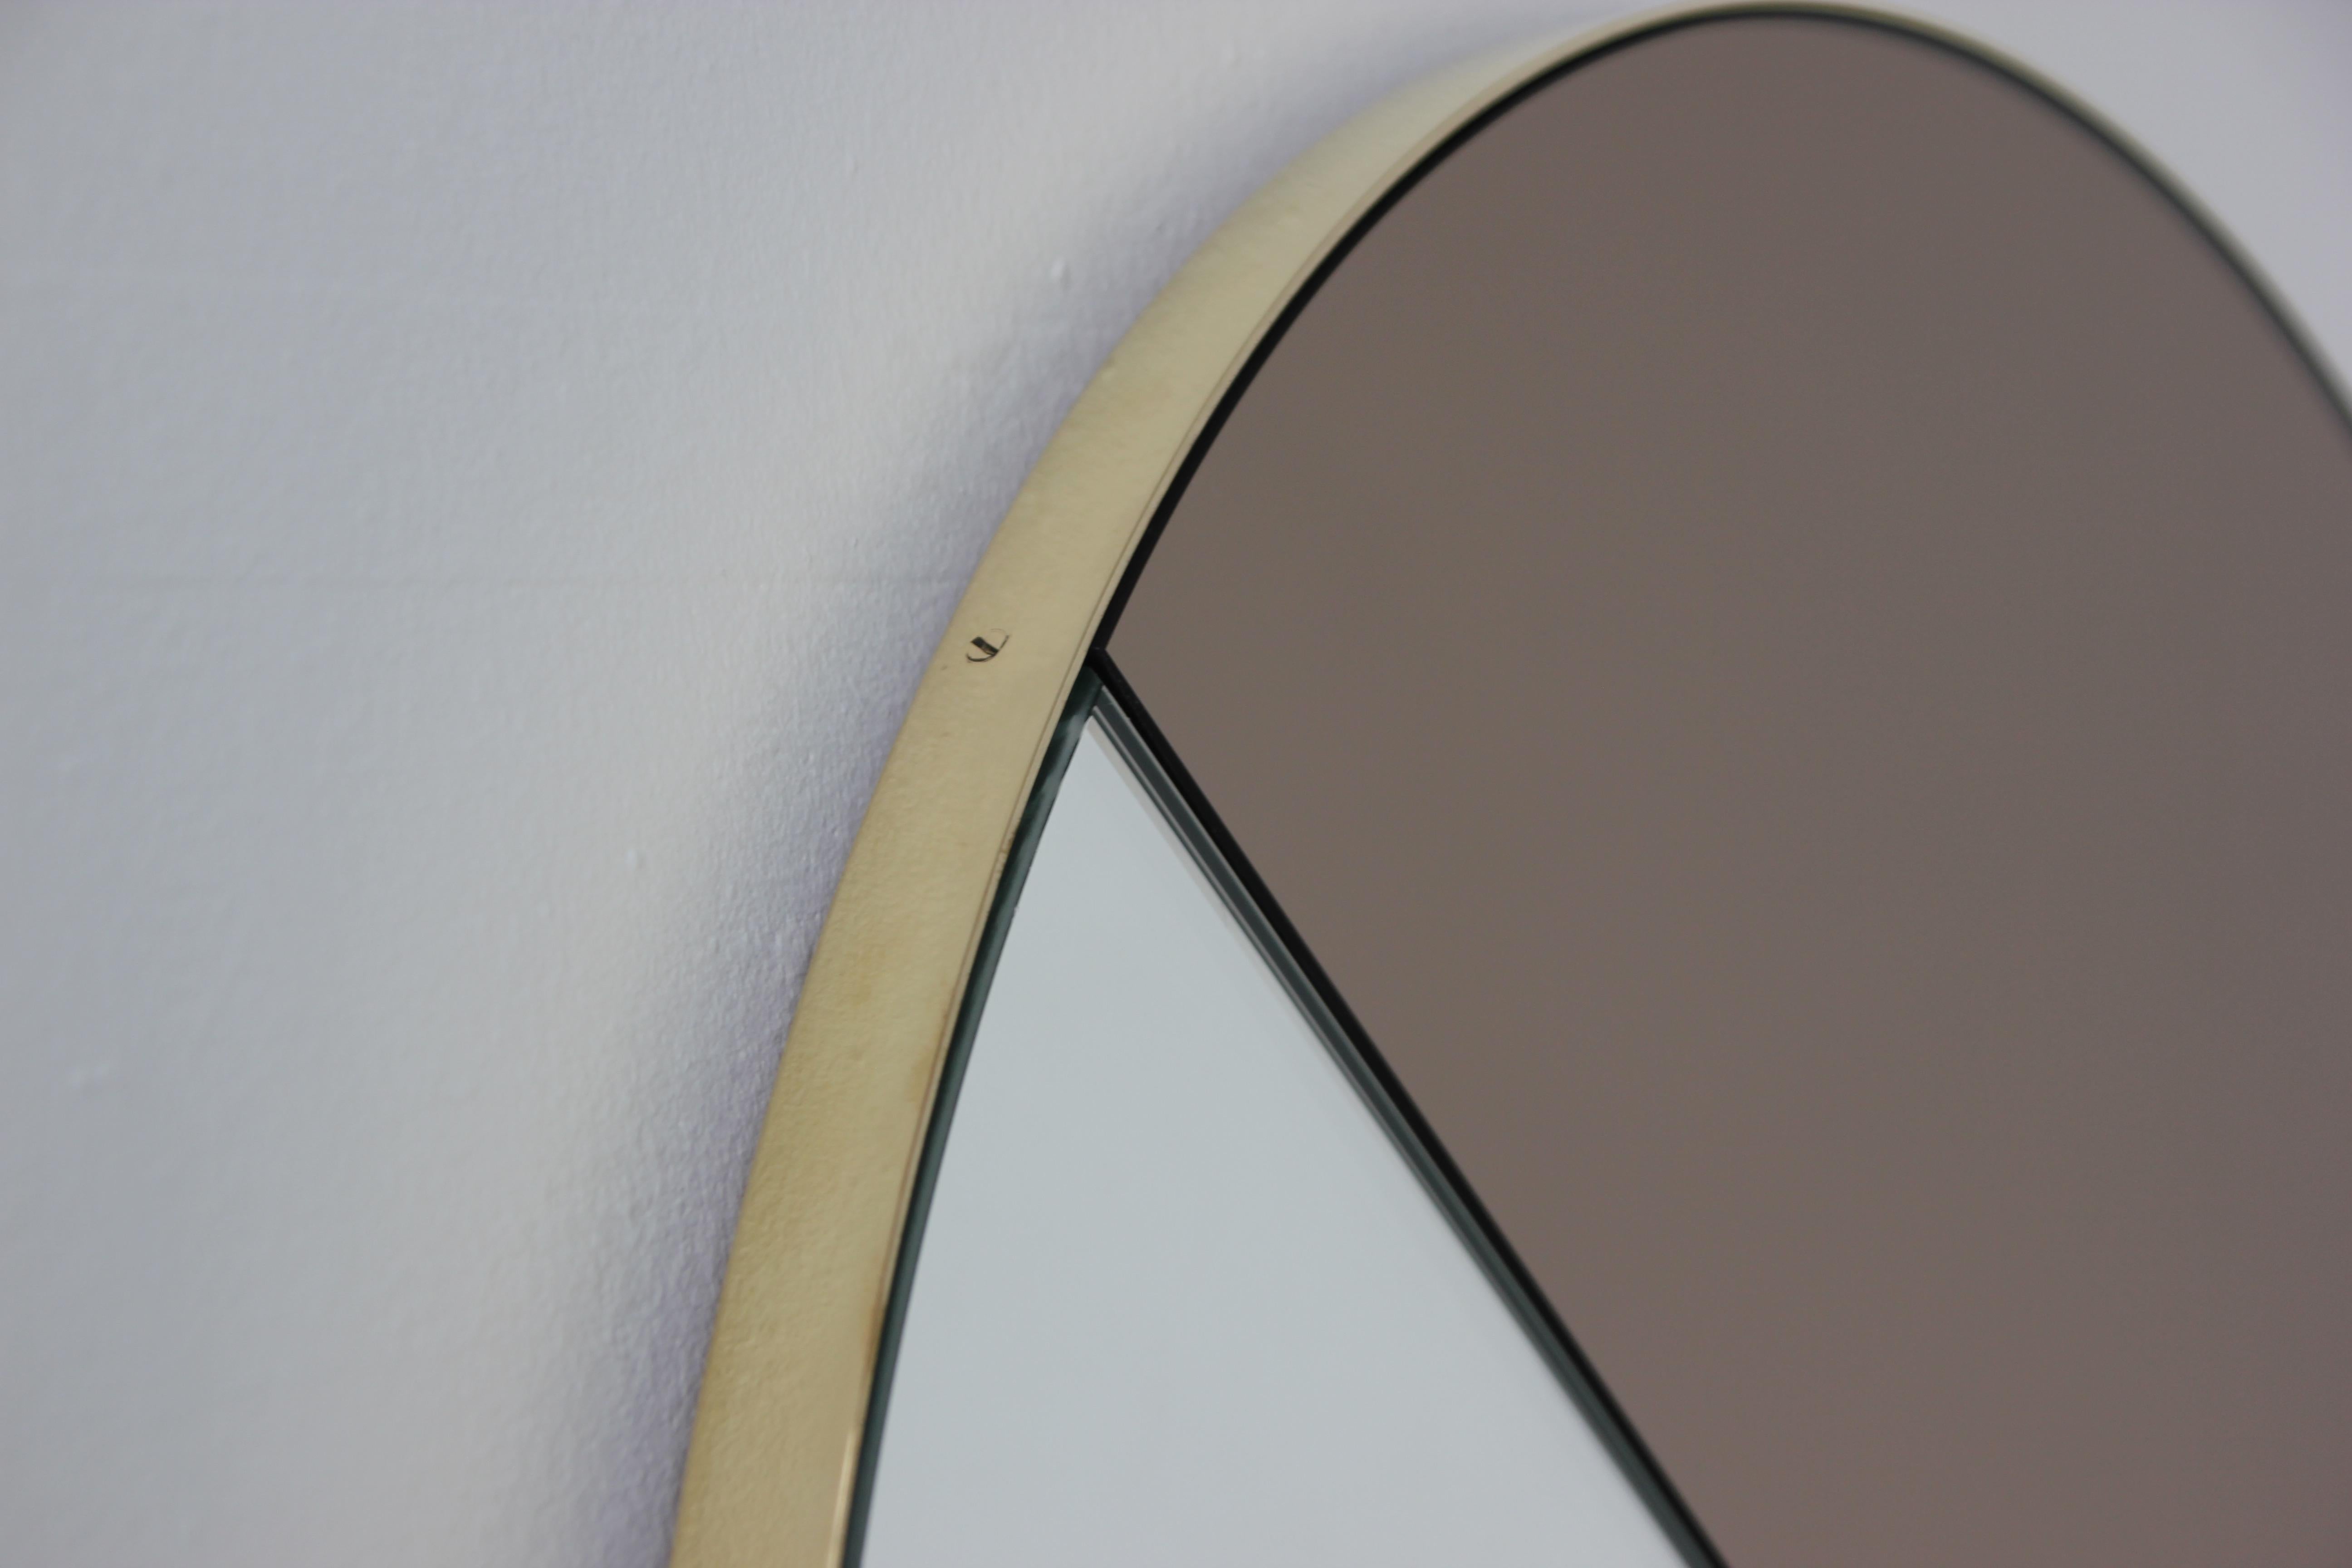 Miroir Orbis Dualis™ contemporain mixte teinté de bronze et d'argent avec un élégant cadre massif en laiton brossé.  Conçu et fabriqué à la main à Londres, au Royaume-Uni.

Tous les miroirs sont équipés d'un ingénieux système de tasseaux à la